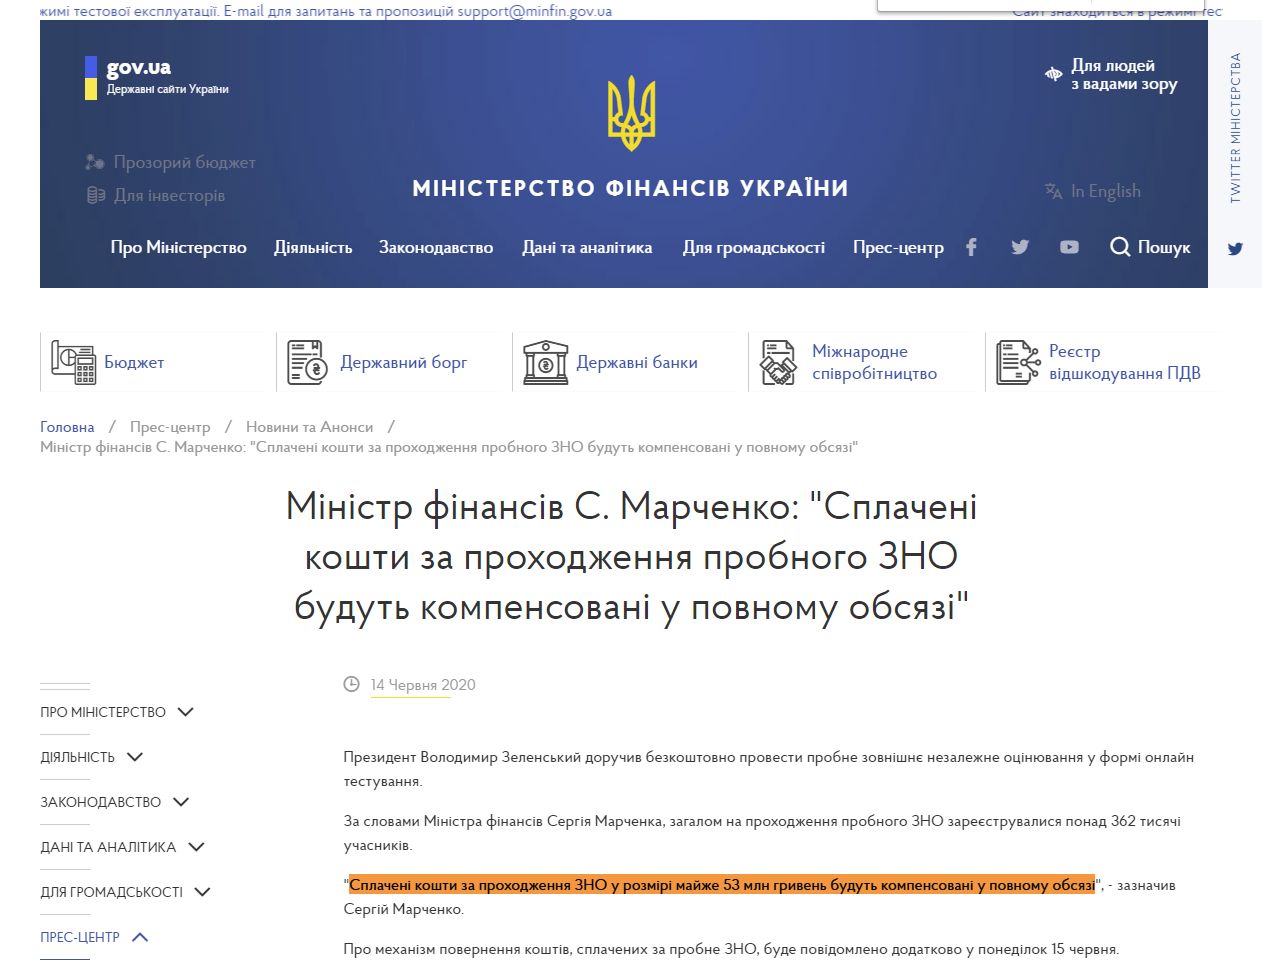 https://mof.gov.ua/uk/news/ministr_finansiv_s_marchenko_splacheni_koshti_za_prokhodzhennia_probnogo_zno_budut_kompensovani_u_povnomu_obsiazi-2189